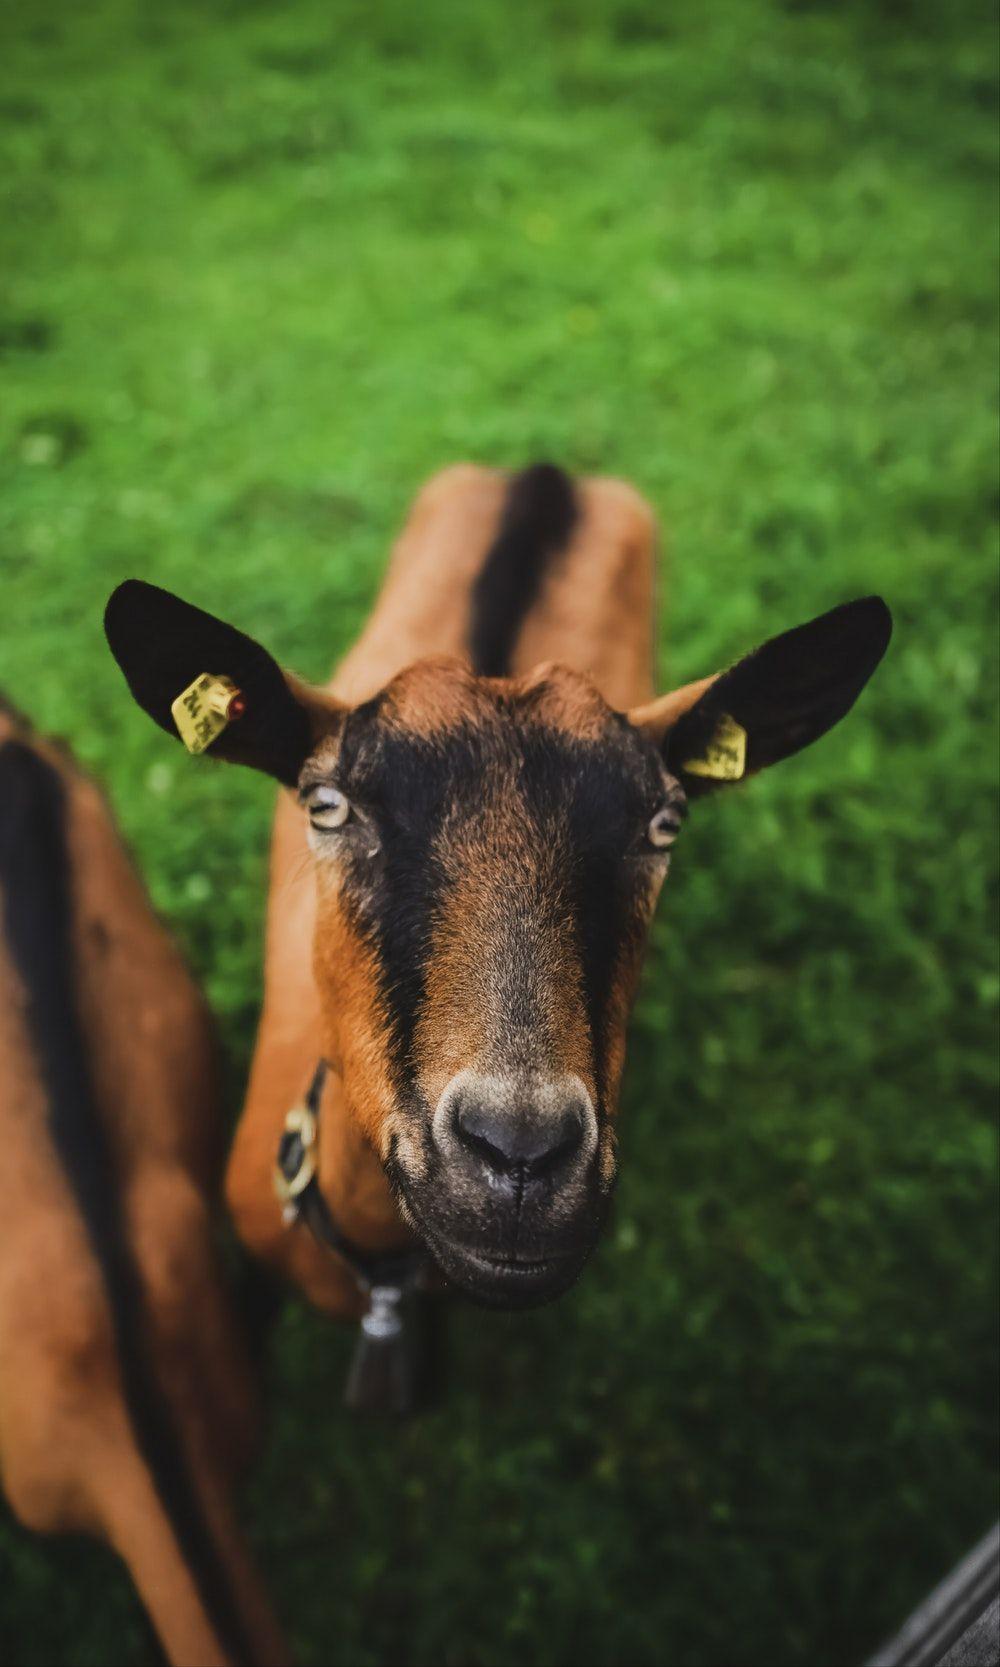 Goat Image. Download Free Image